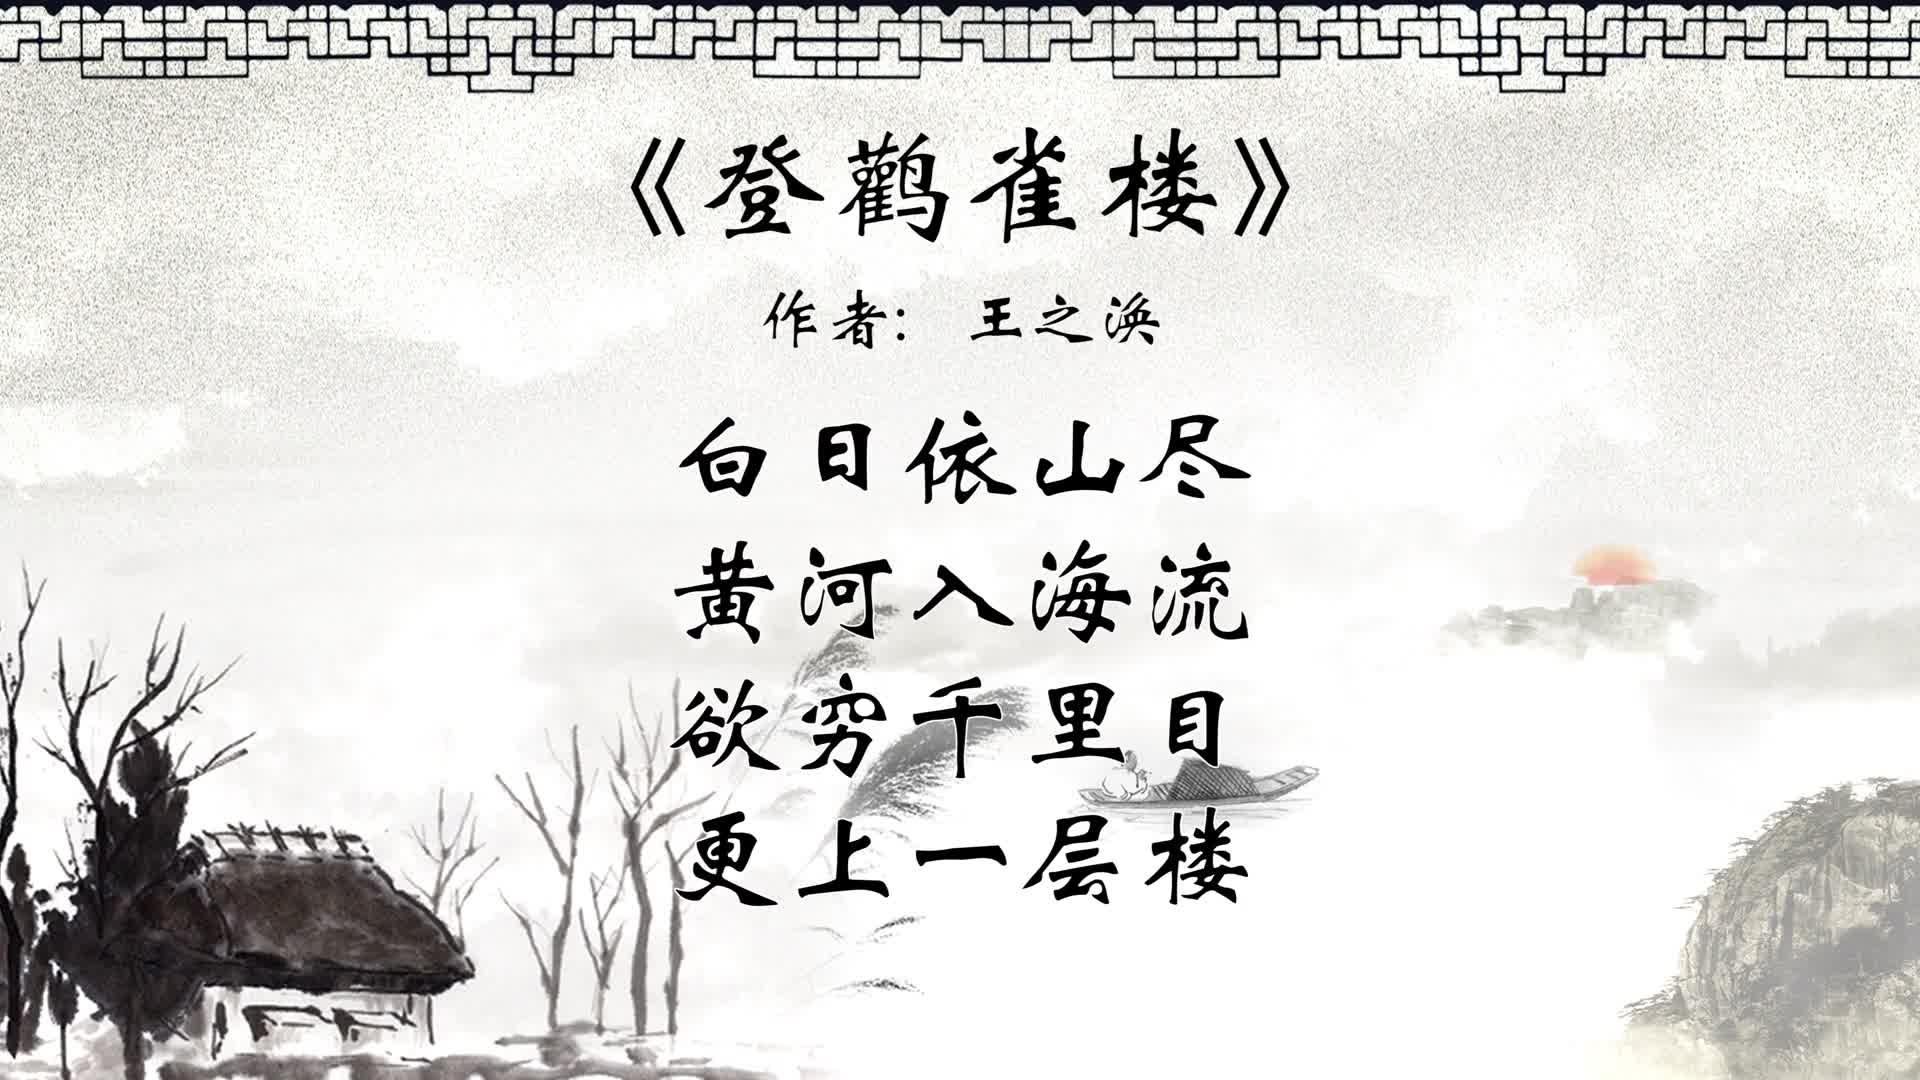 中华传统文化 每天一首古诗词 登鹳雀楼